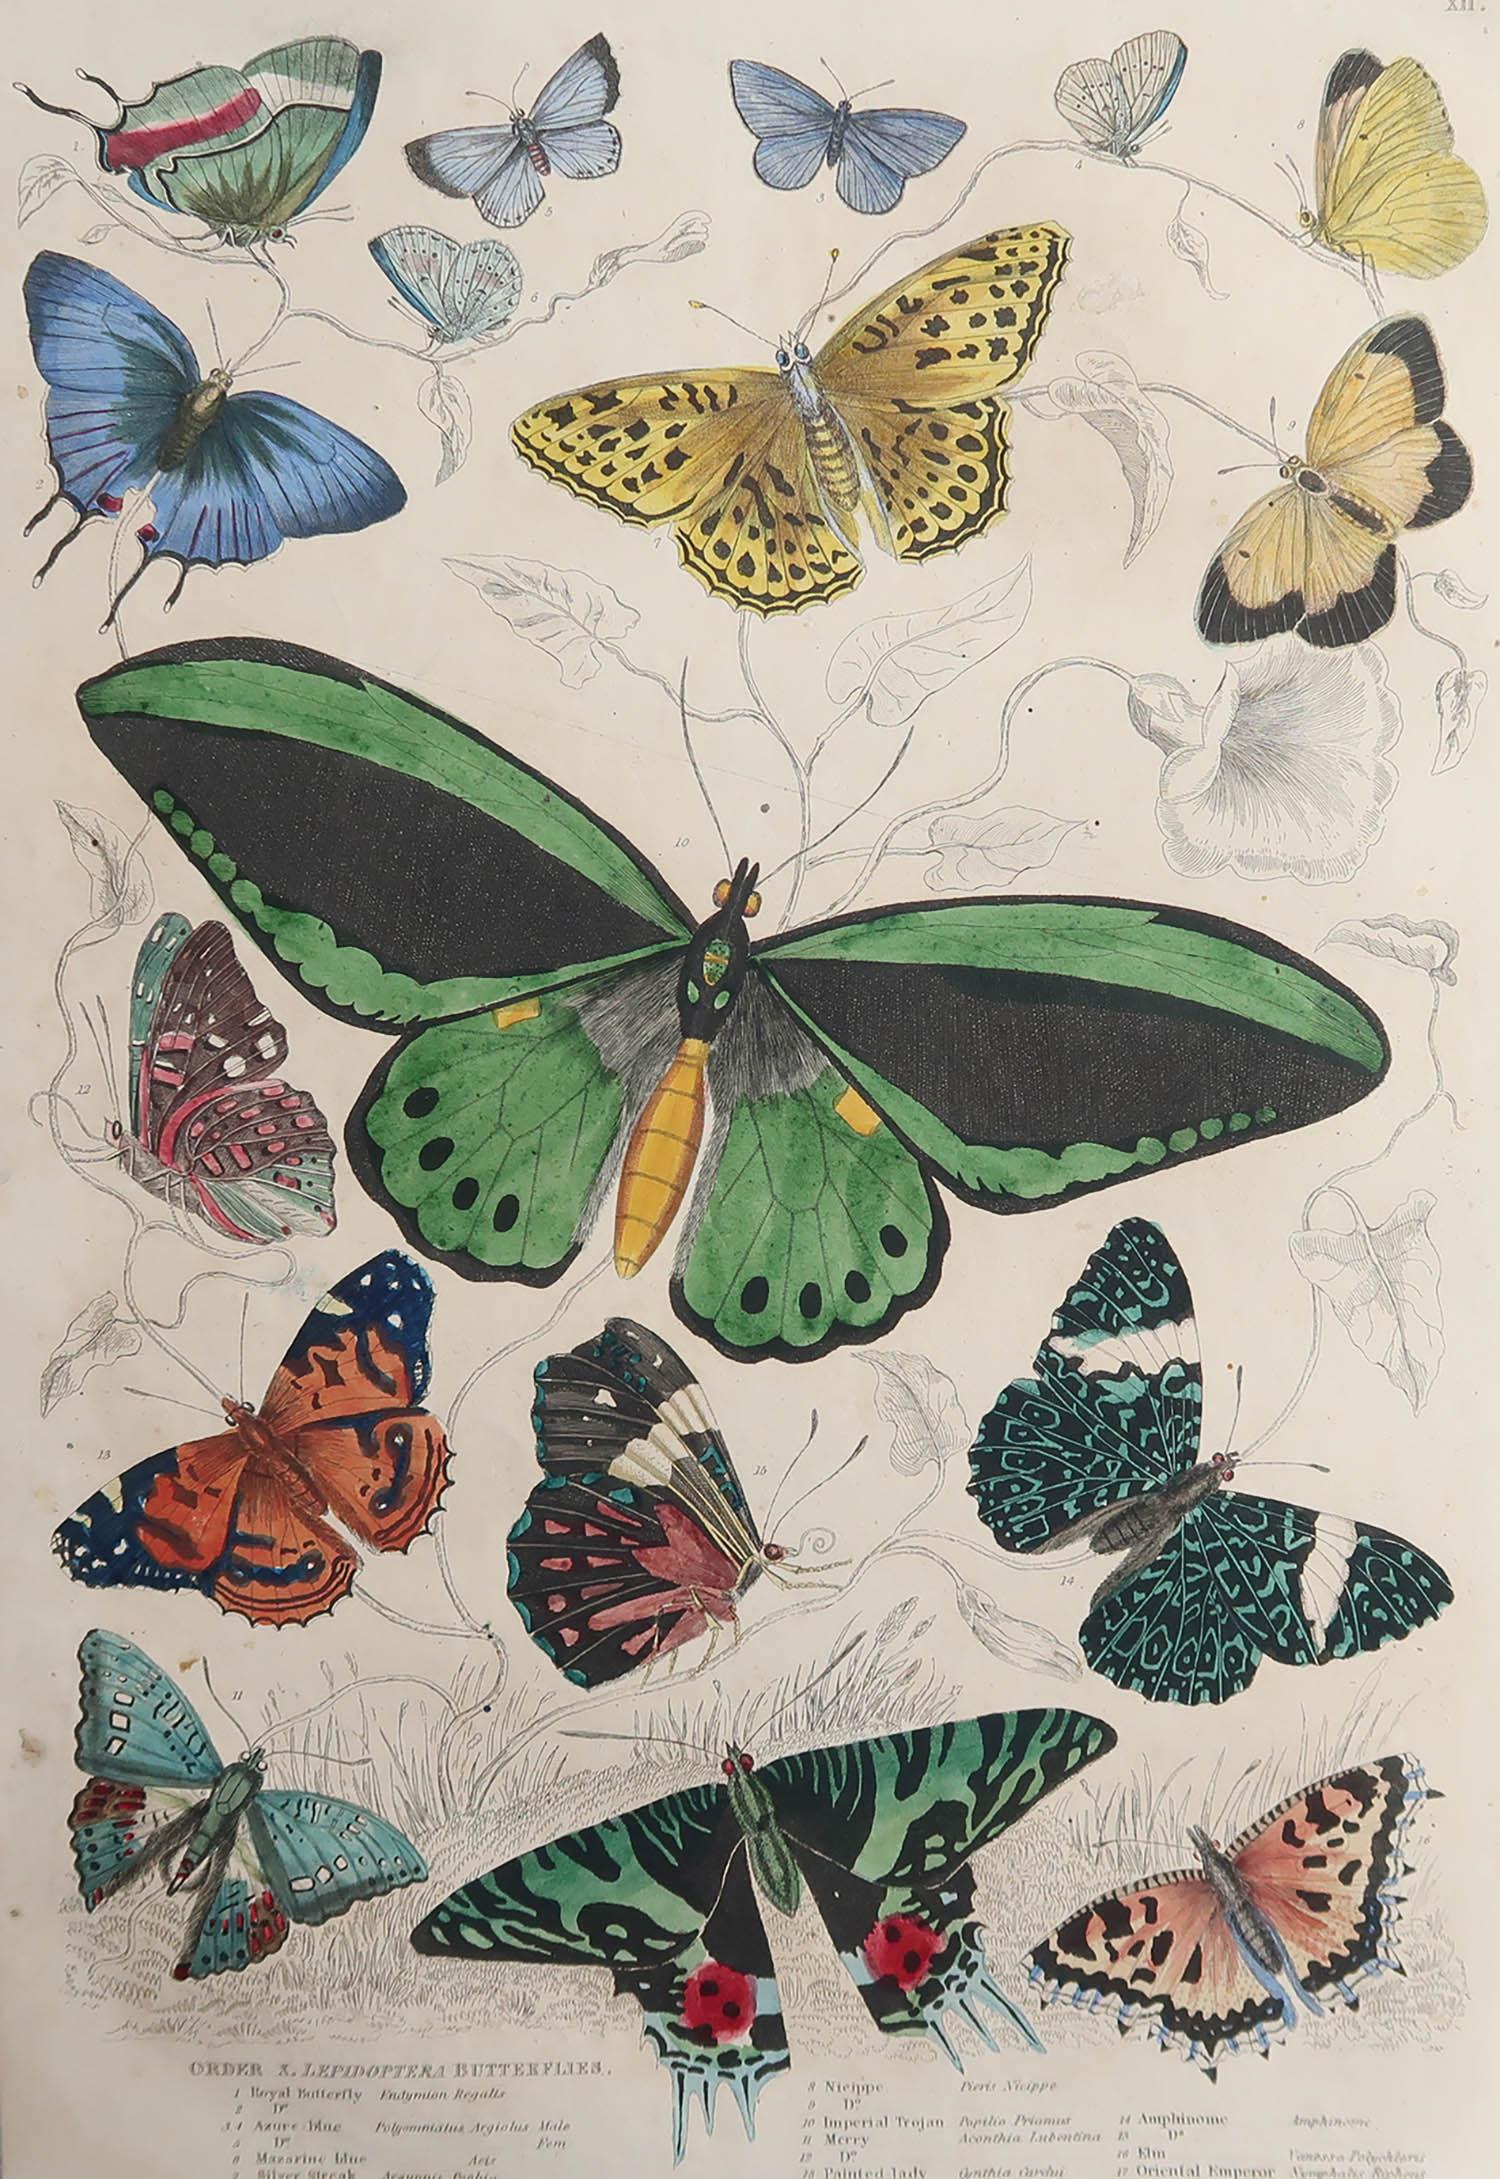 Tolles Bild von Schmetterlingen

Ungerahmt. So haben Sie die Möglichkeit, Ihre eigene Auswahl an Rahmen zu treffen.

Lithographie nach Cpt. Brown'

Original-Handfarbe

Veröffentlicht um 1835

Kostenloser Versand.




